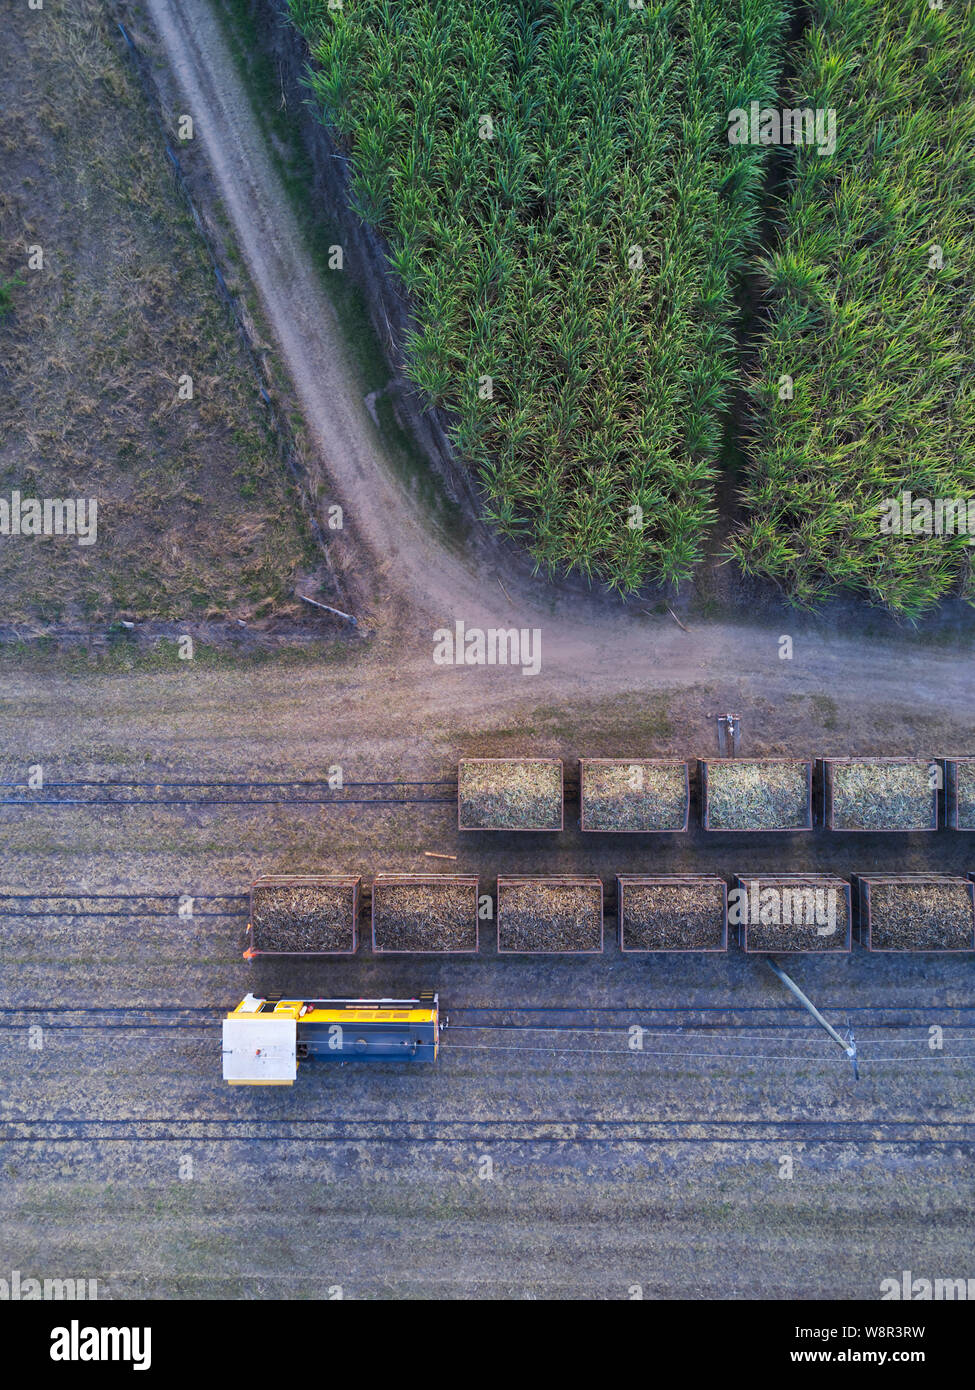 La canne à sucre de l'antenne du réseau ferroviaire train pendant la saison des récoltes à Wallaville près de Bundaberg Queensland Australie Banque D'Images